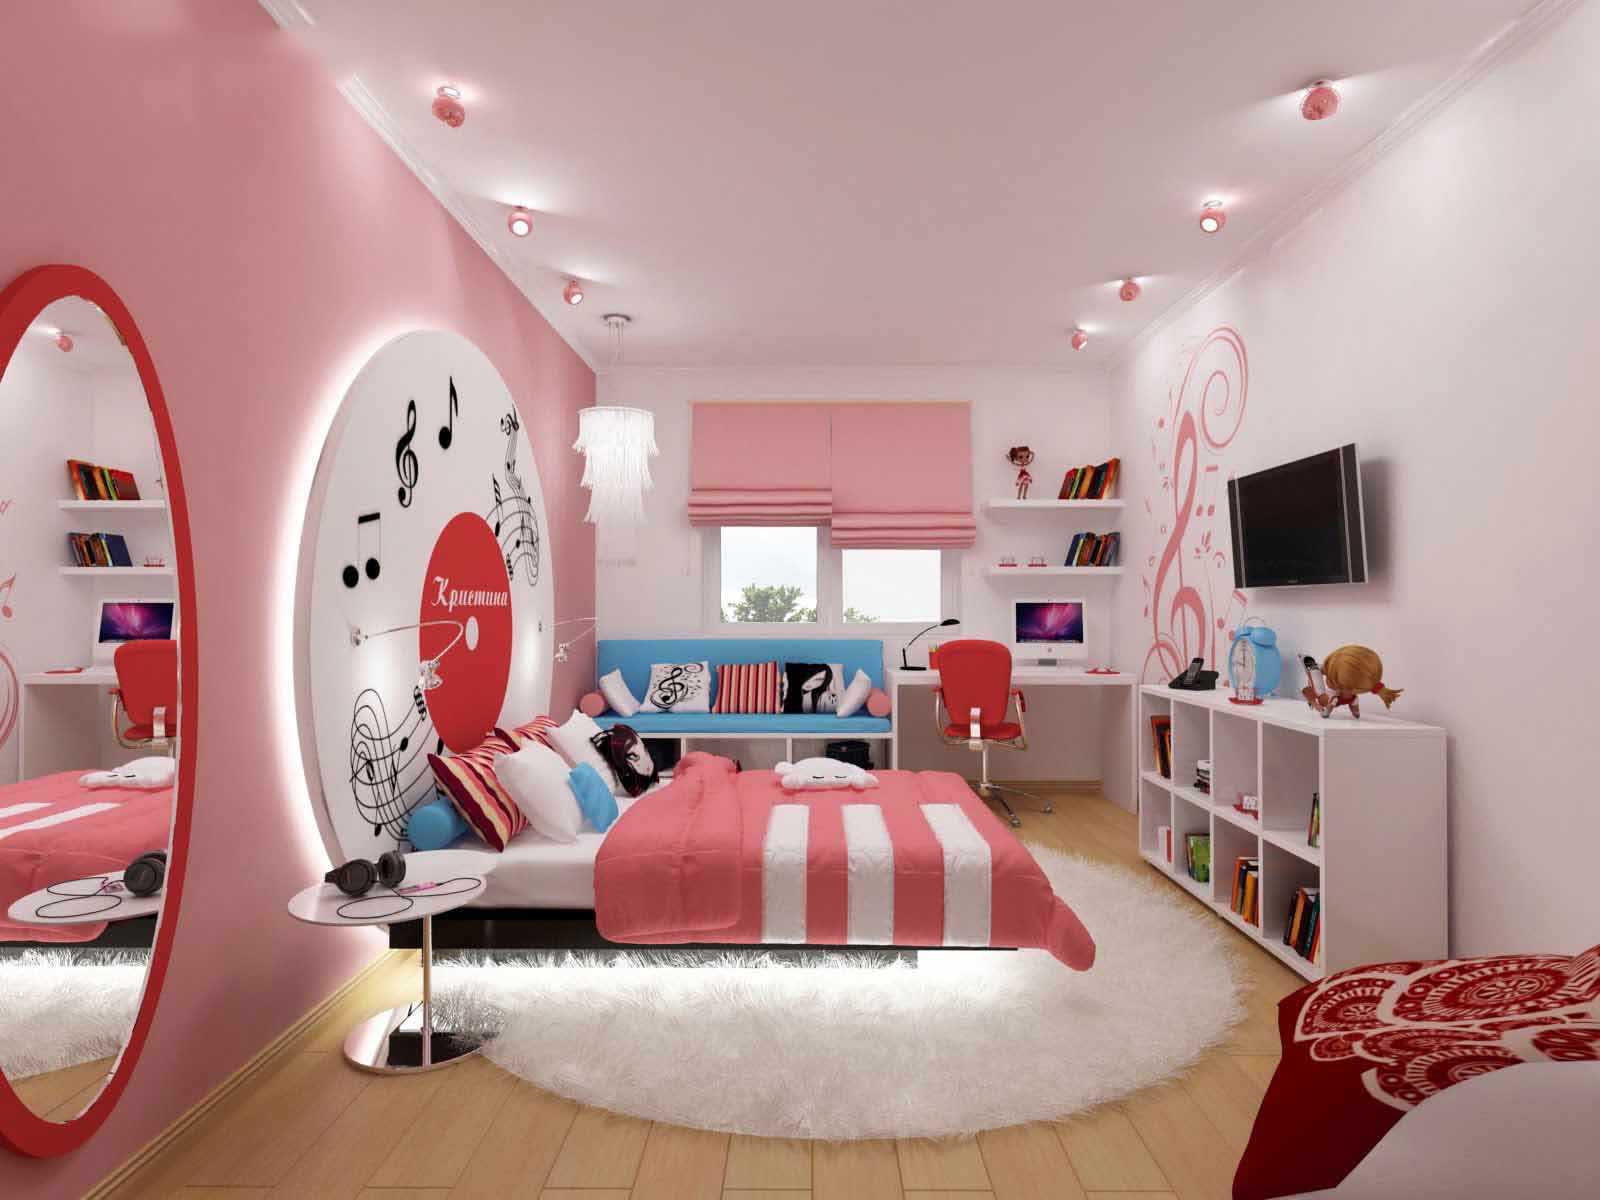 Обои для комнаты девочек-подростков (67 фото): как выбрать красивые обои для стен в спальню девочек 12-16 лет, дизайнерские идеи